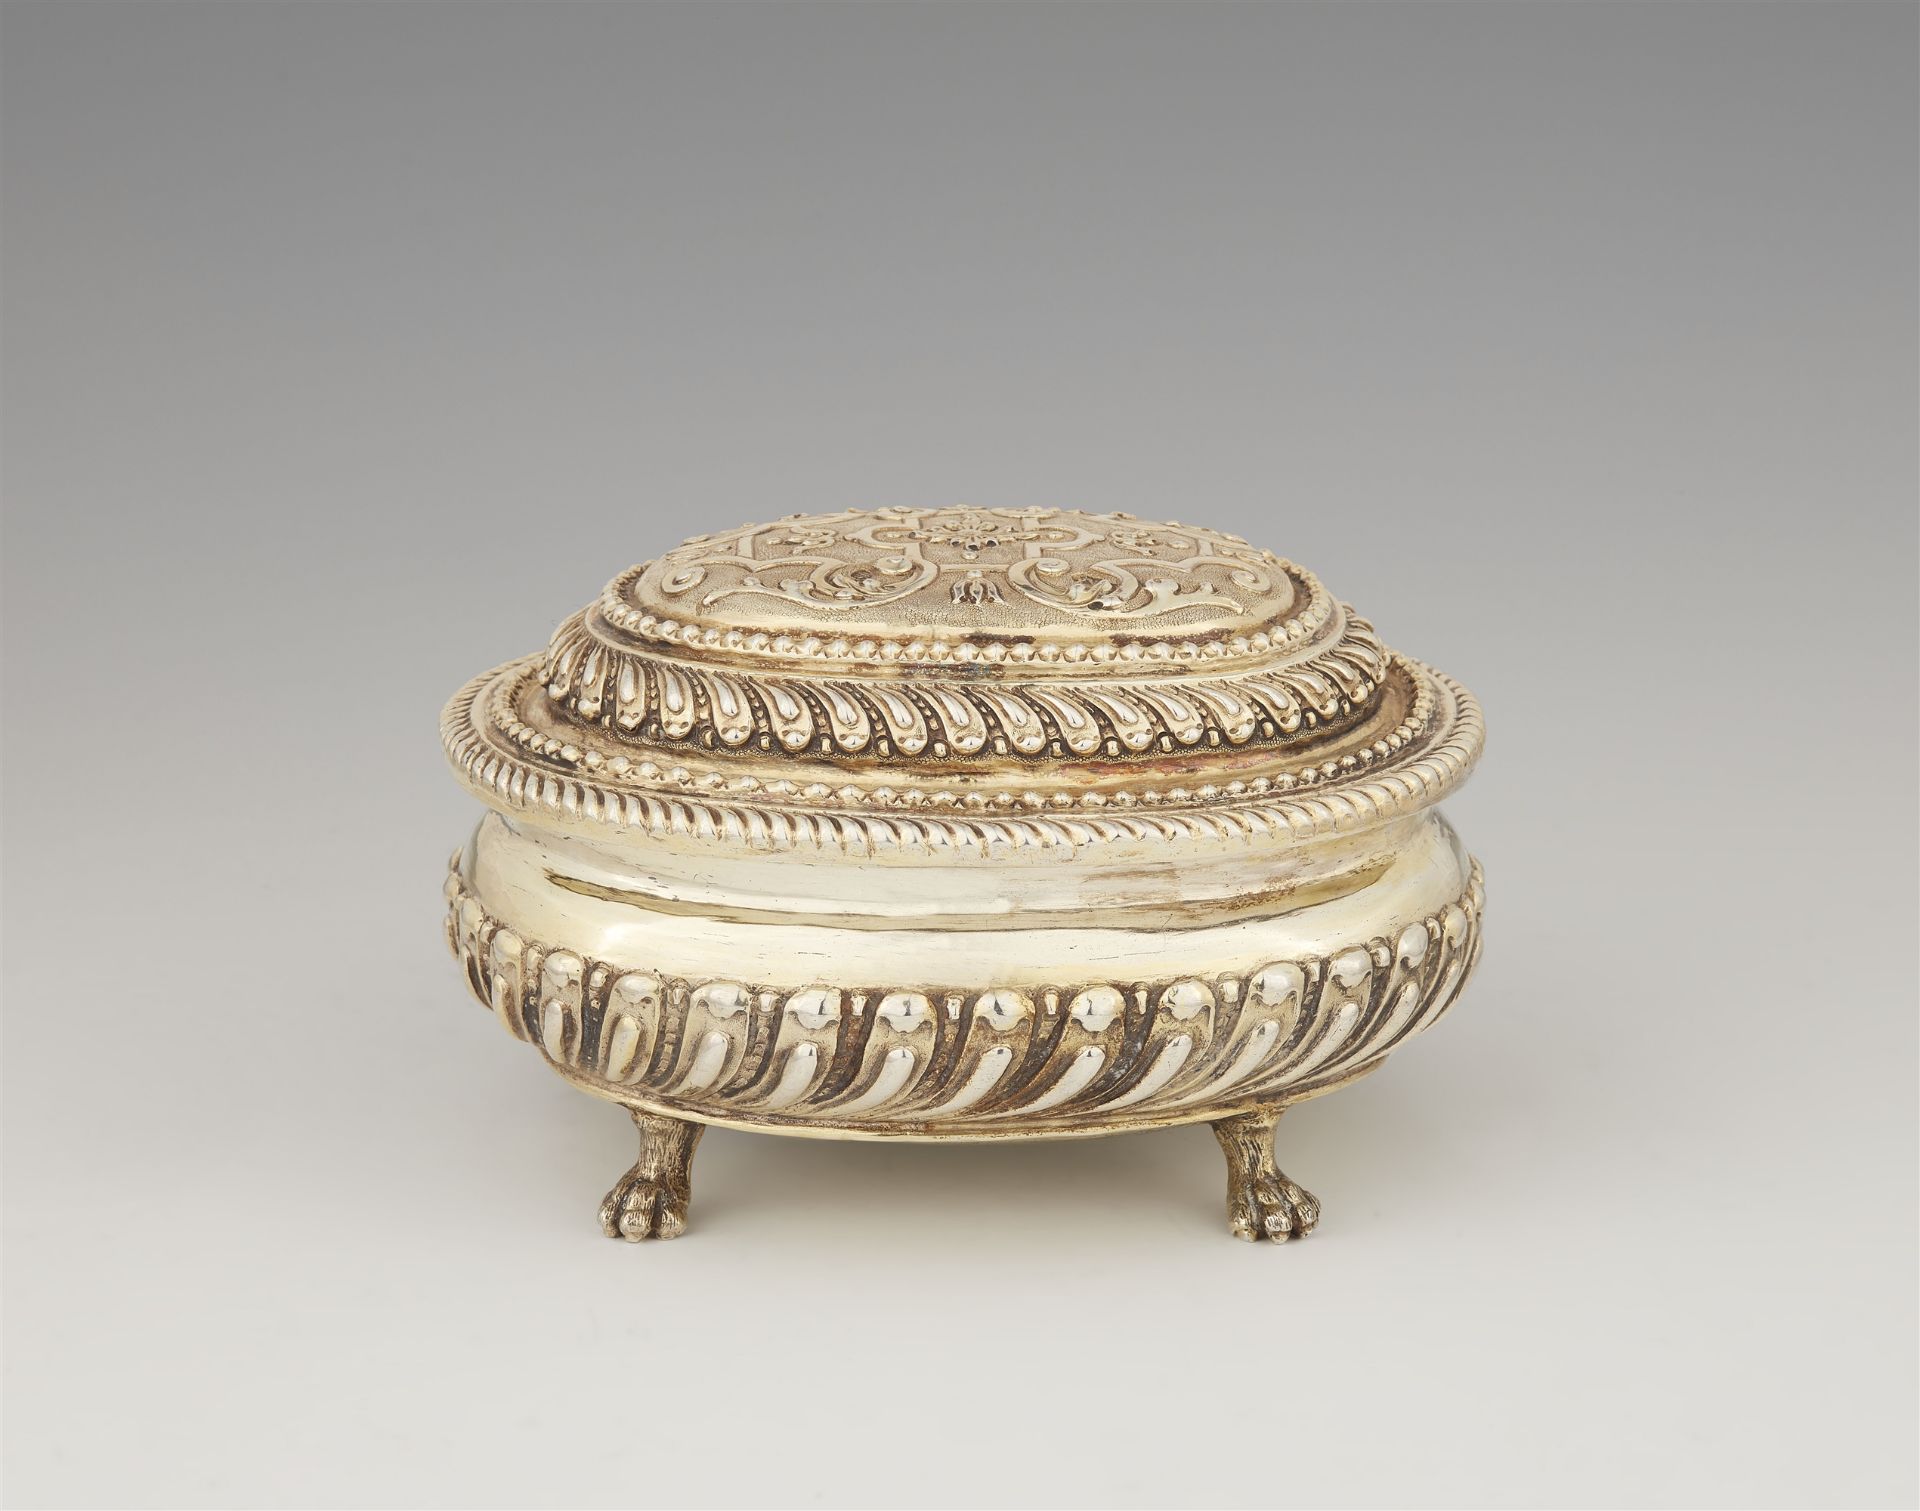 A museum-quality Augsburg Régence silver gilt toilette box